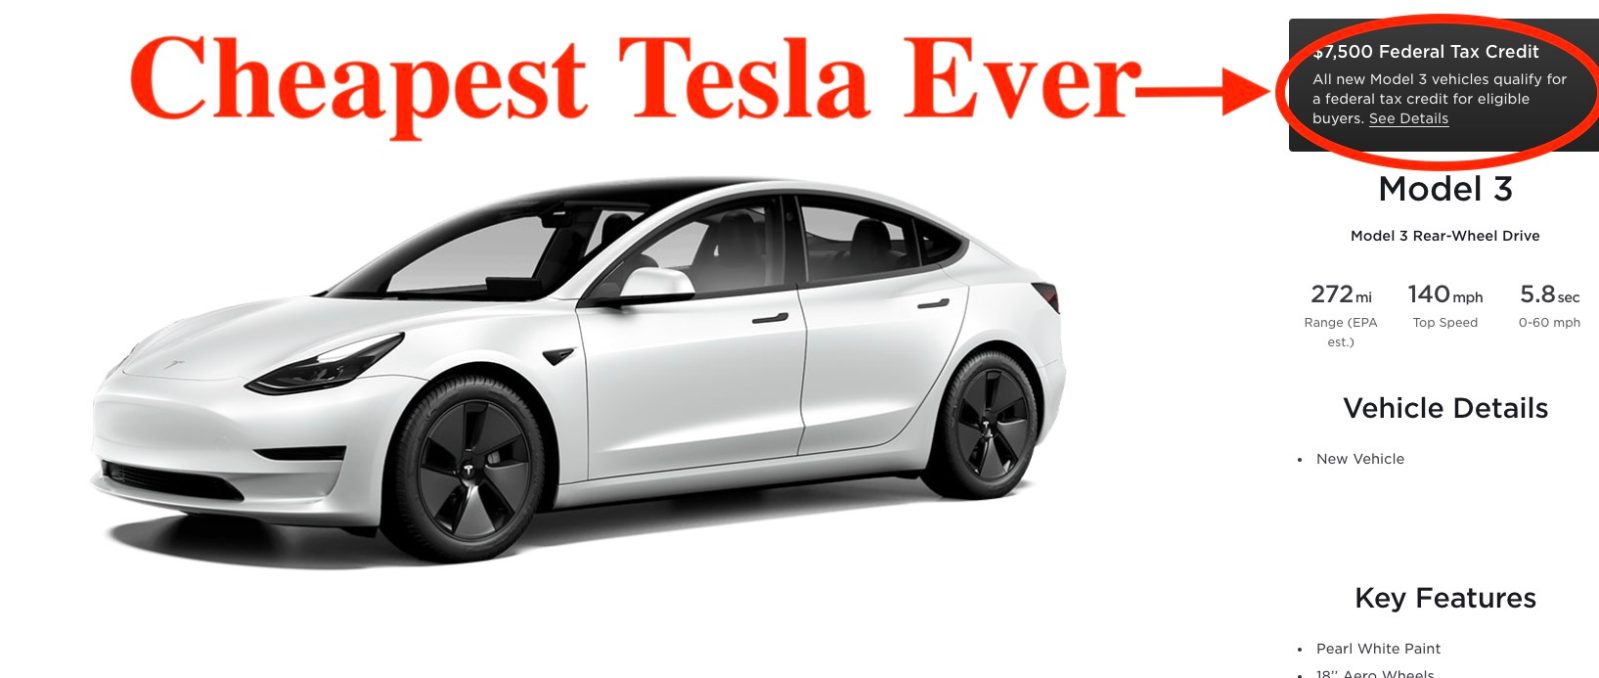 Tesla-full-tax-credit-1.jpg?quality=82&strip=all&w=1600